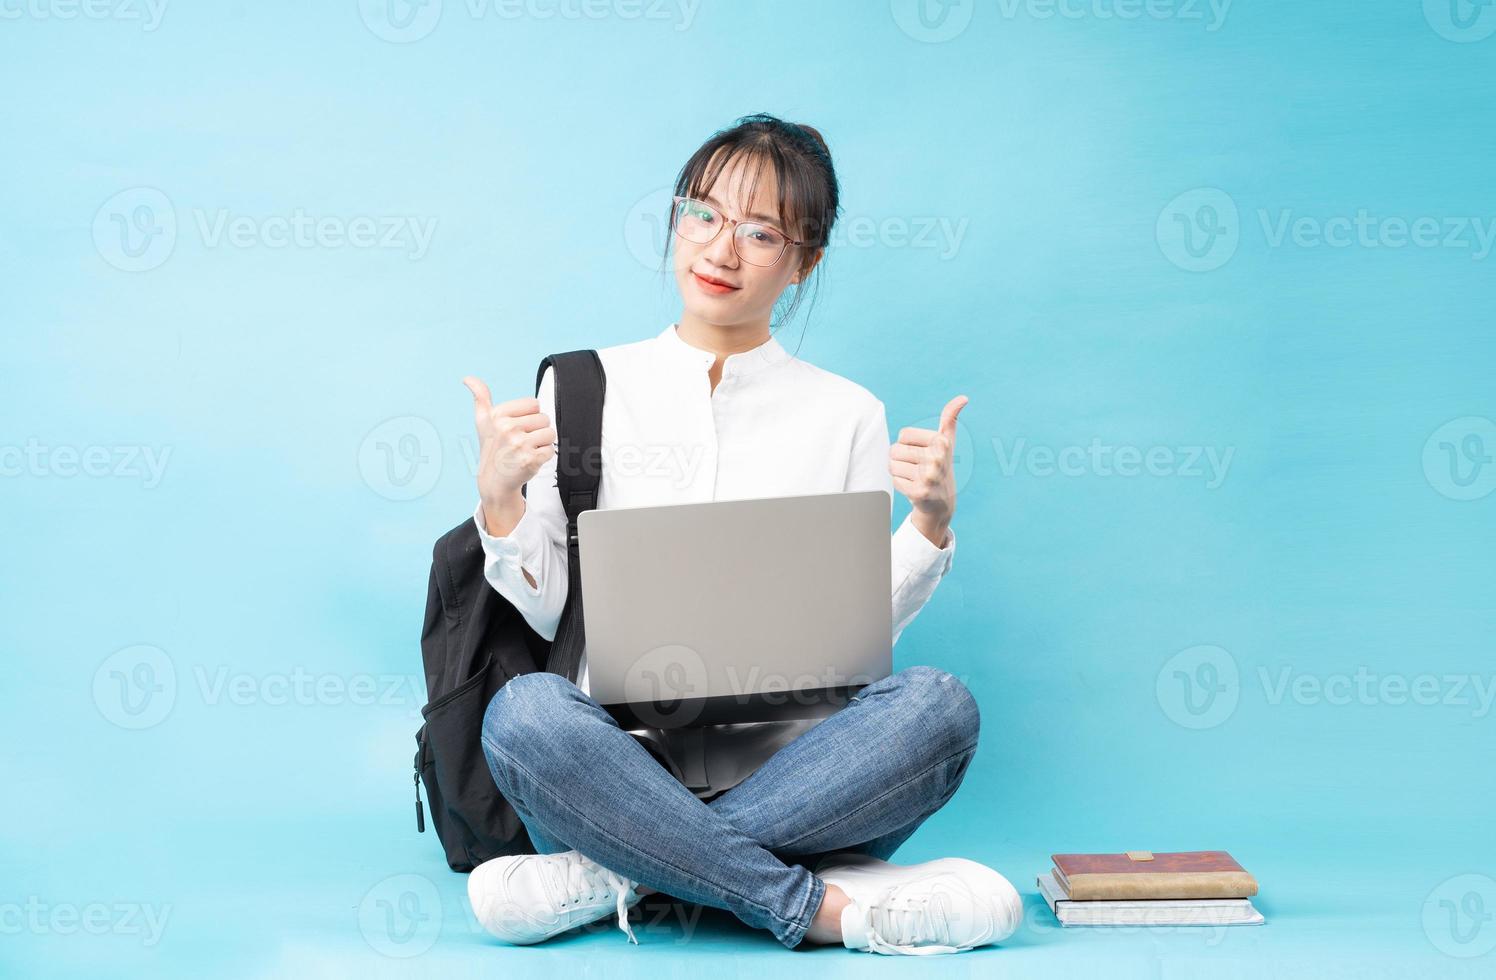 ritratto di una bella studentessa su sfondo blu foto